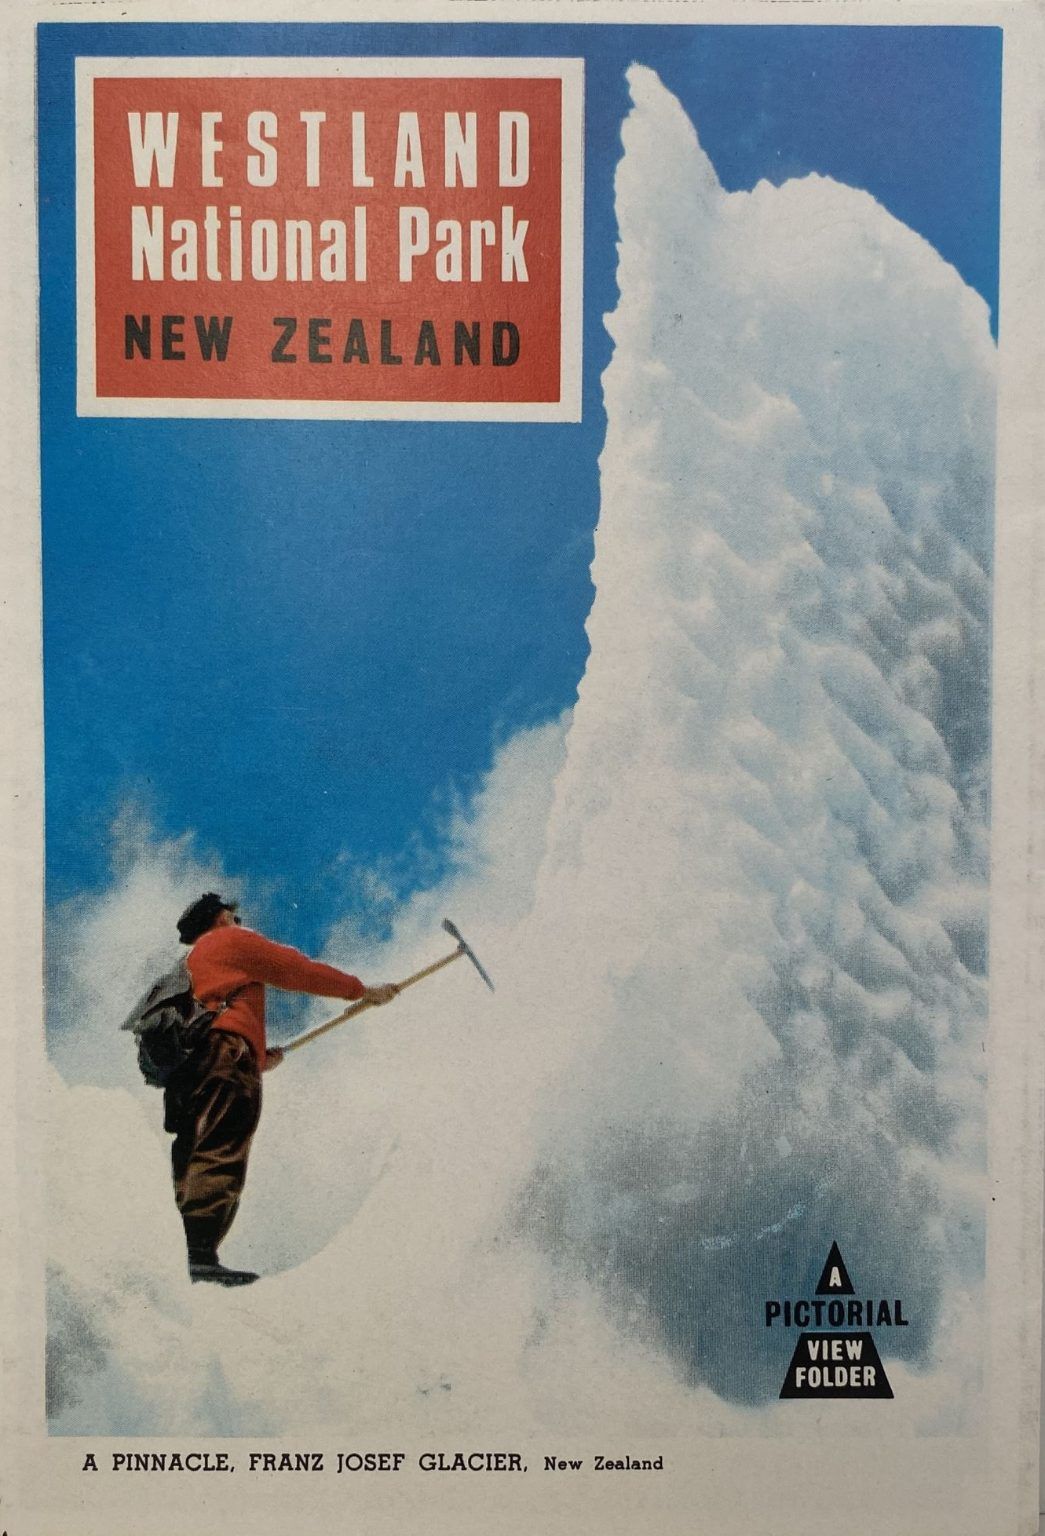 WESTLAND NATIONAL PARK: Vintage brochure